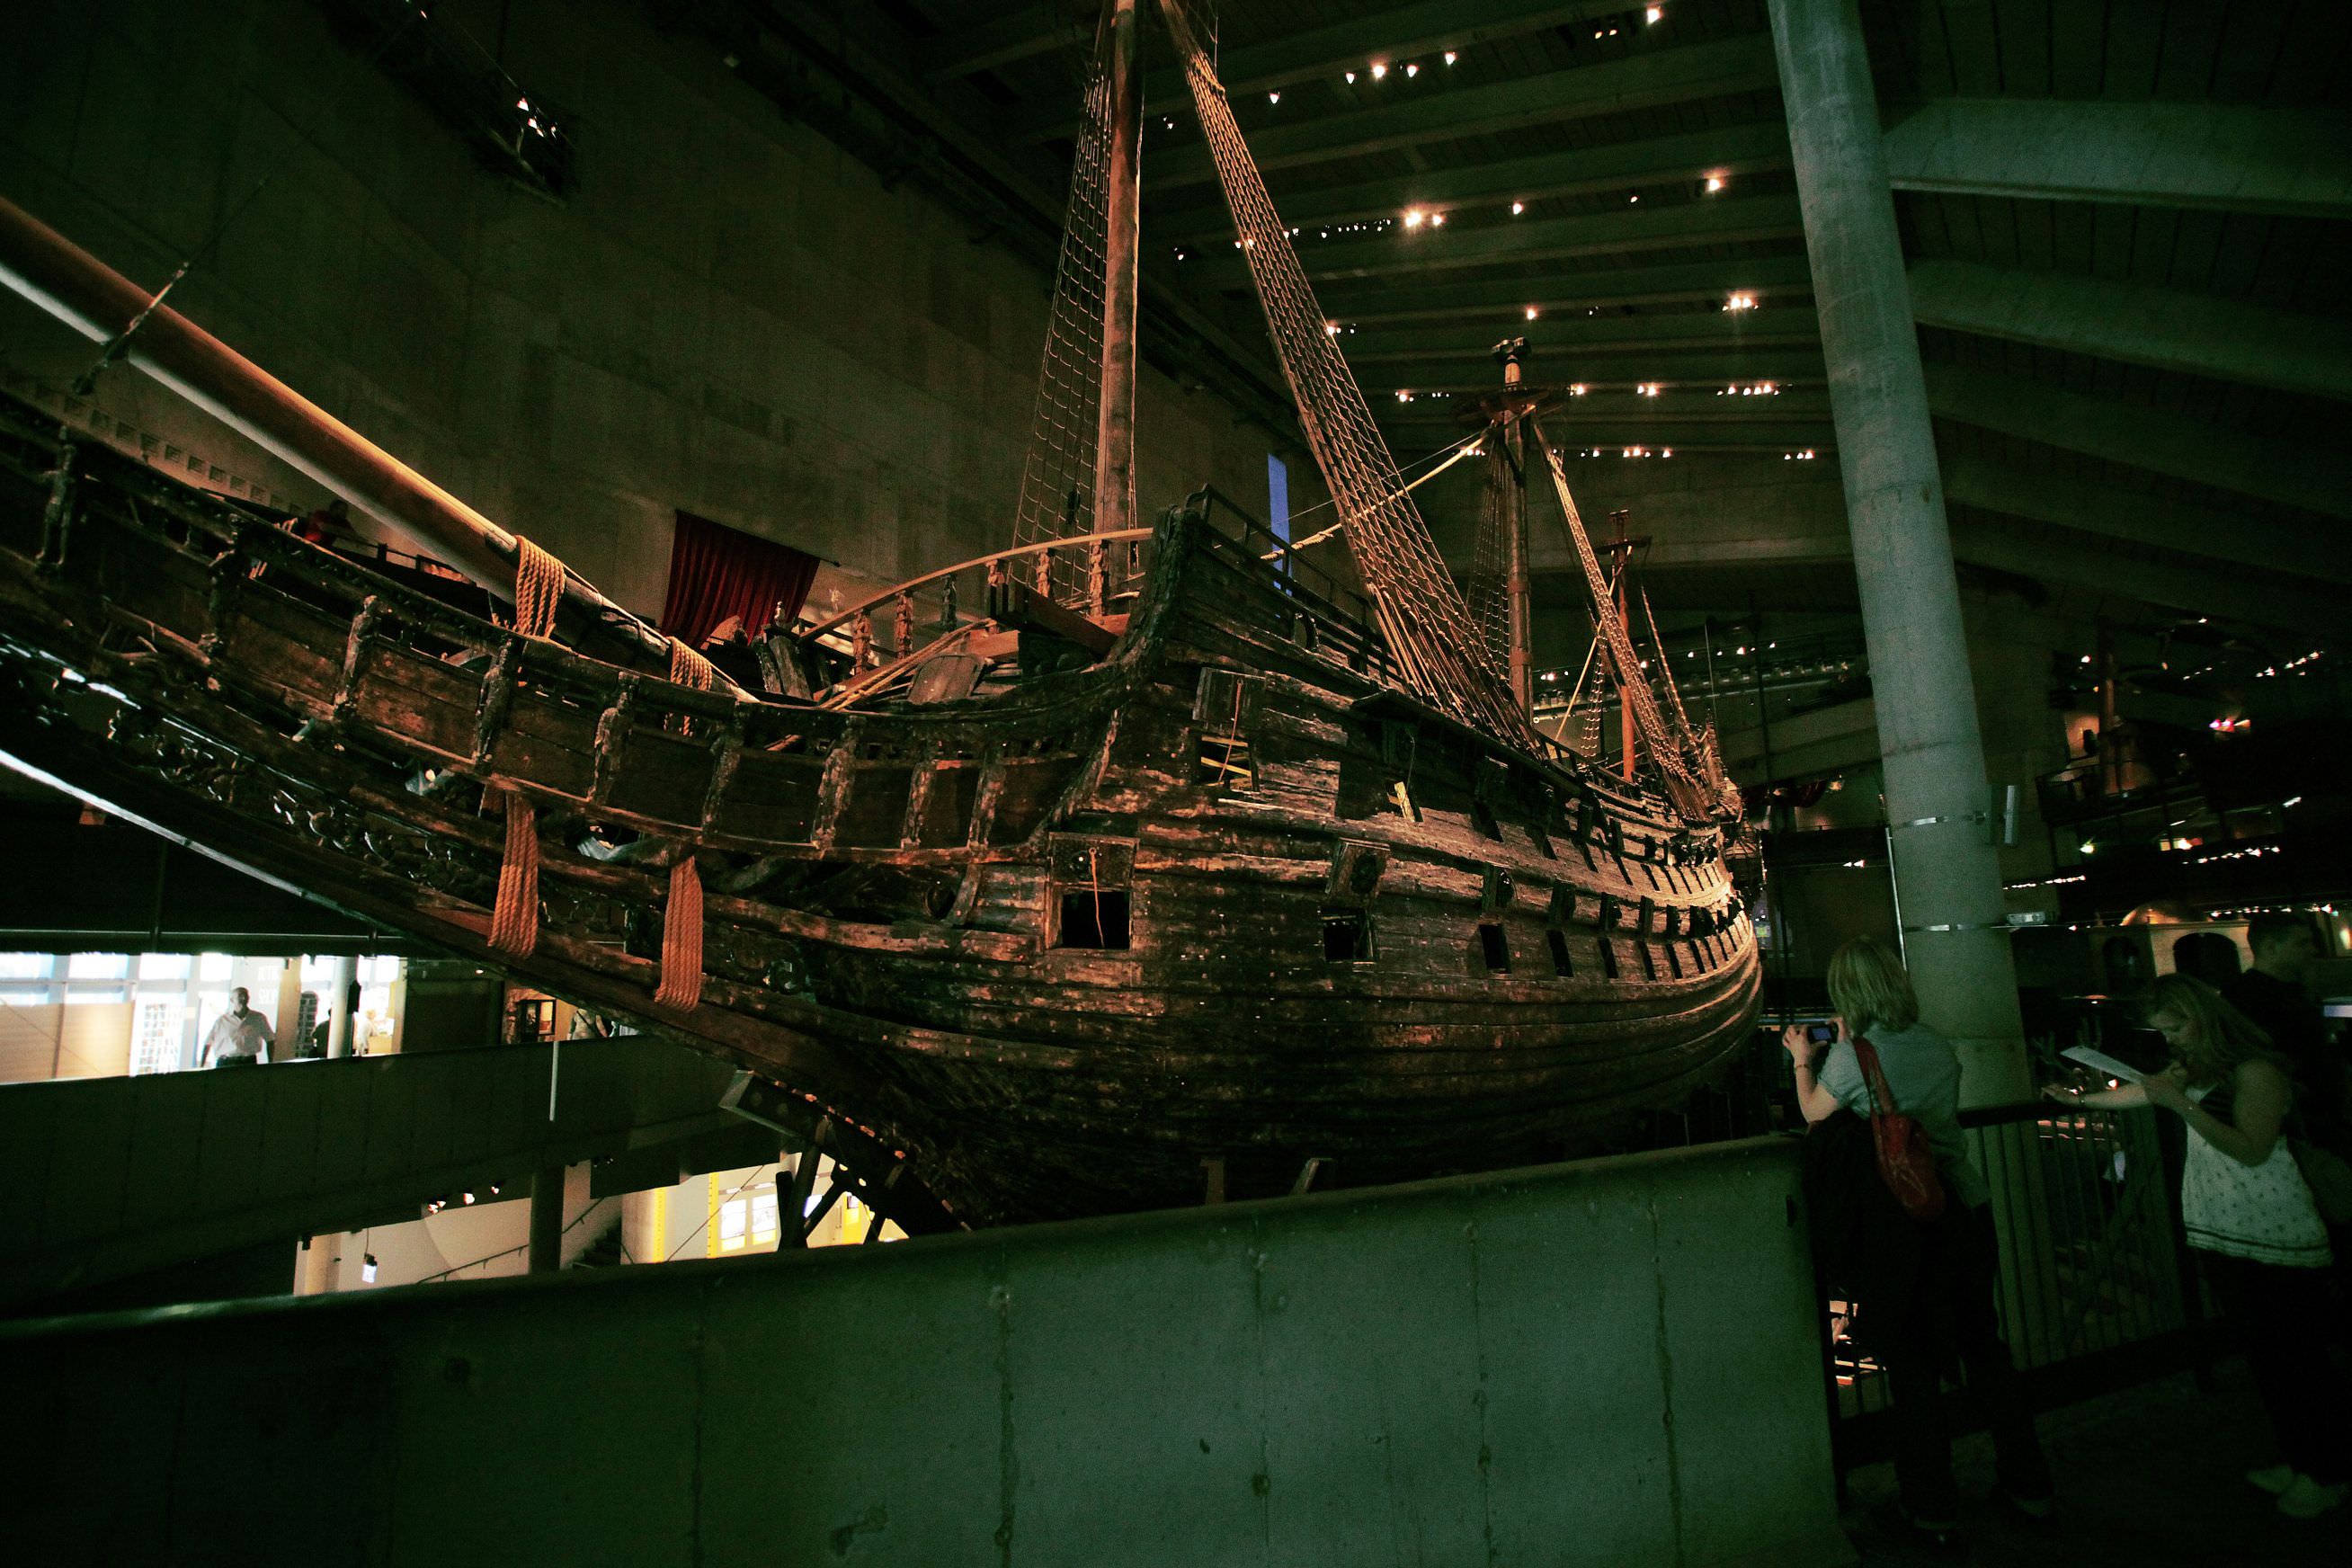 Vasa museum